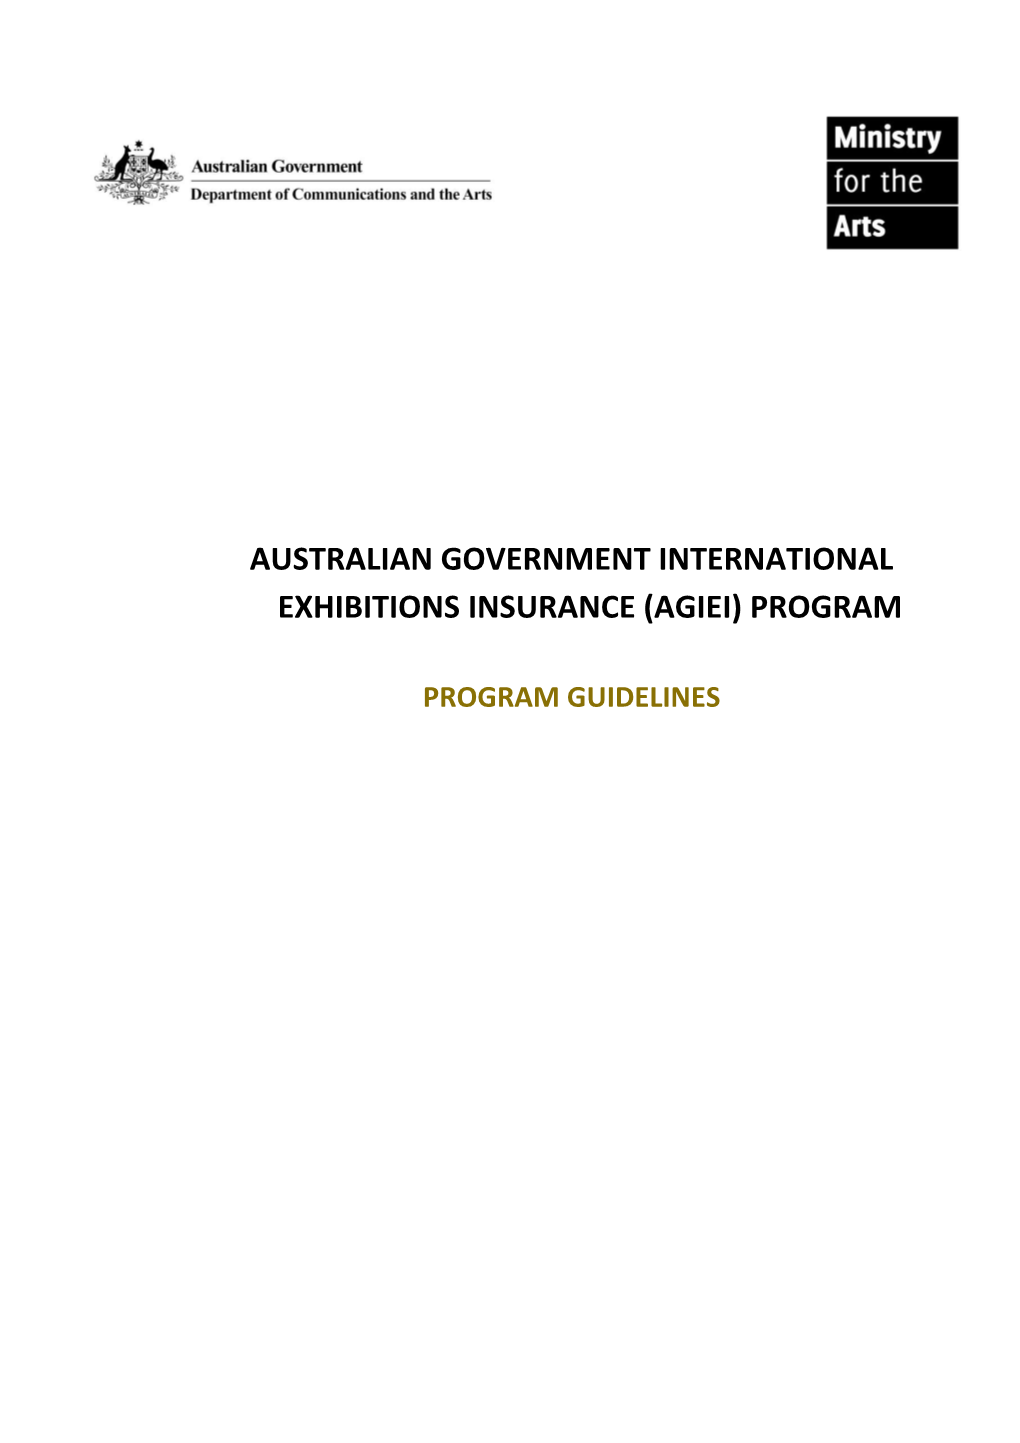 AGIEI Program Guidelines 2015 - 16